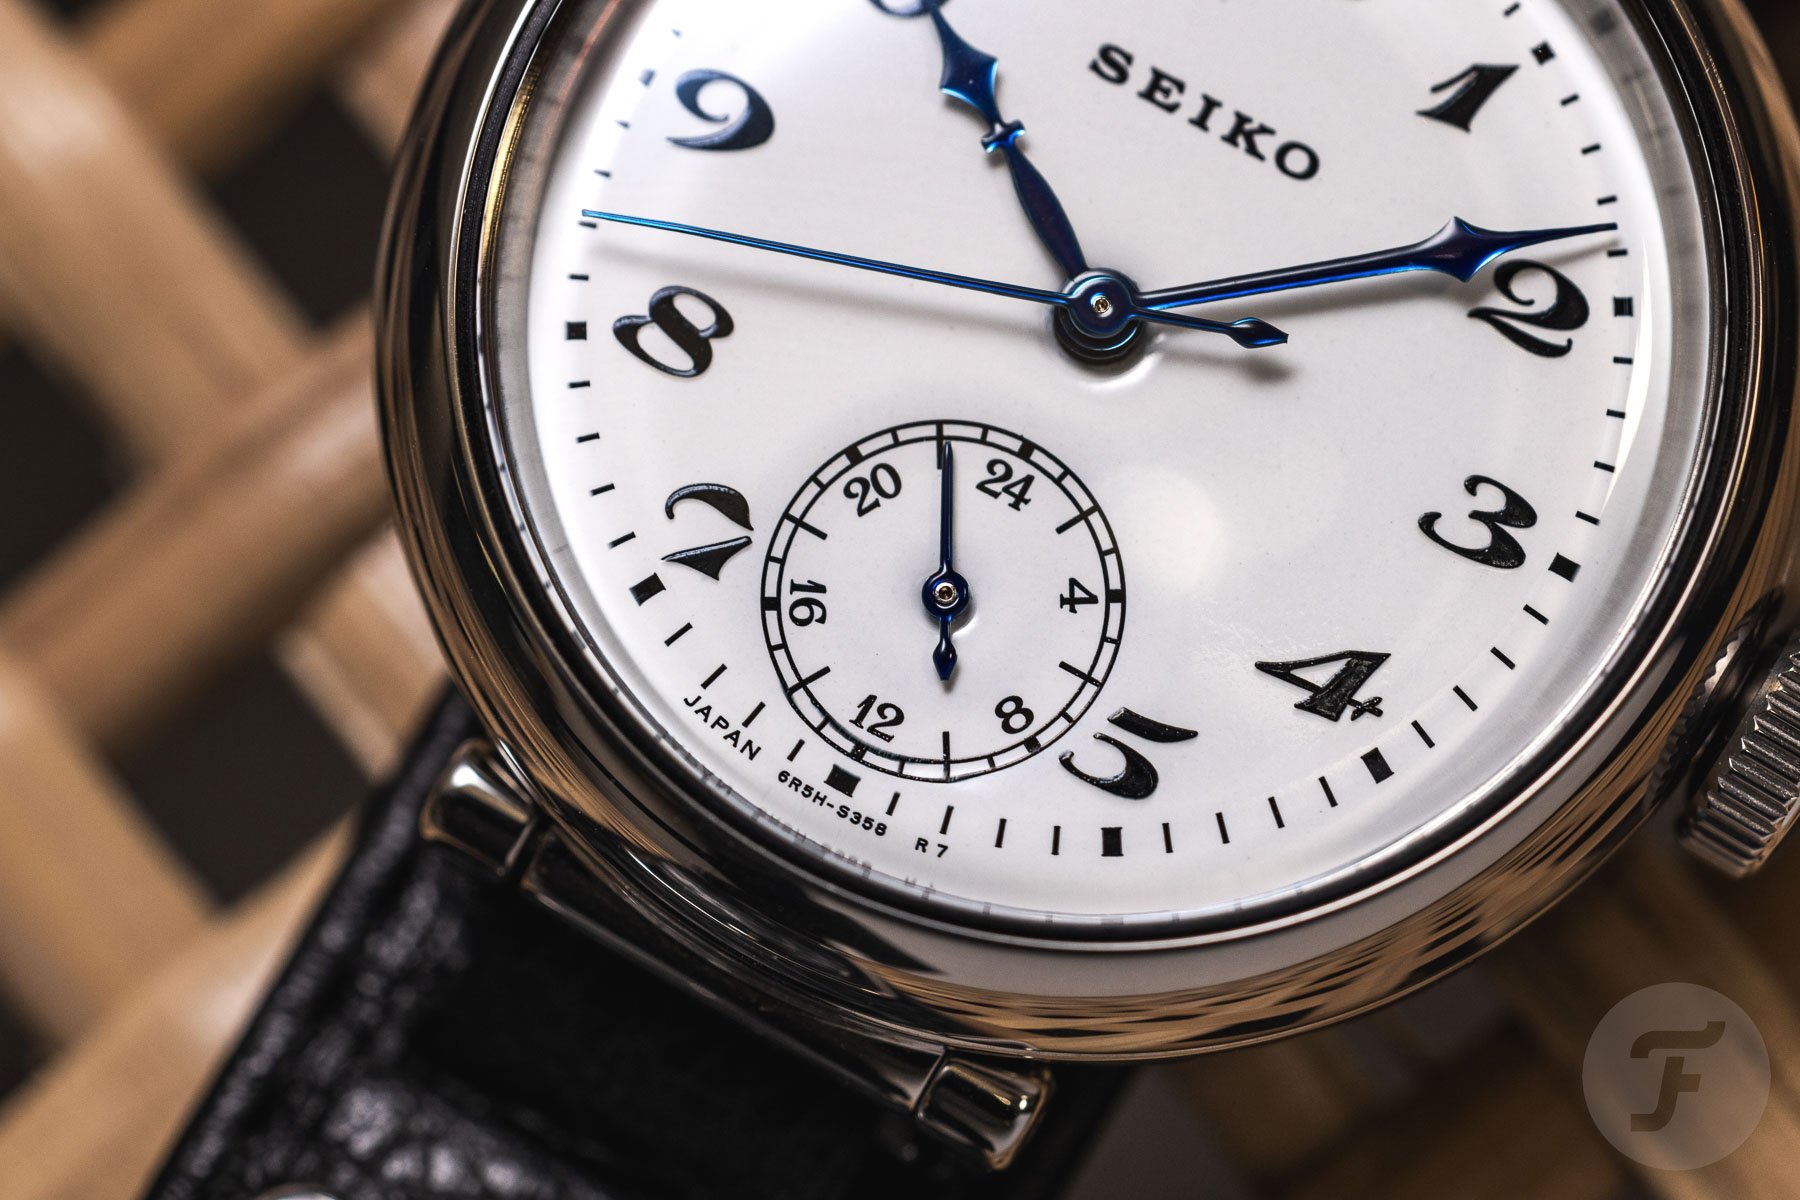 Новые часы Seiko SPB441 к 100-летнему юбилею марки